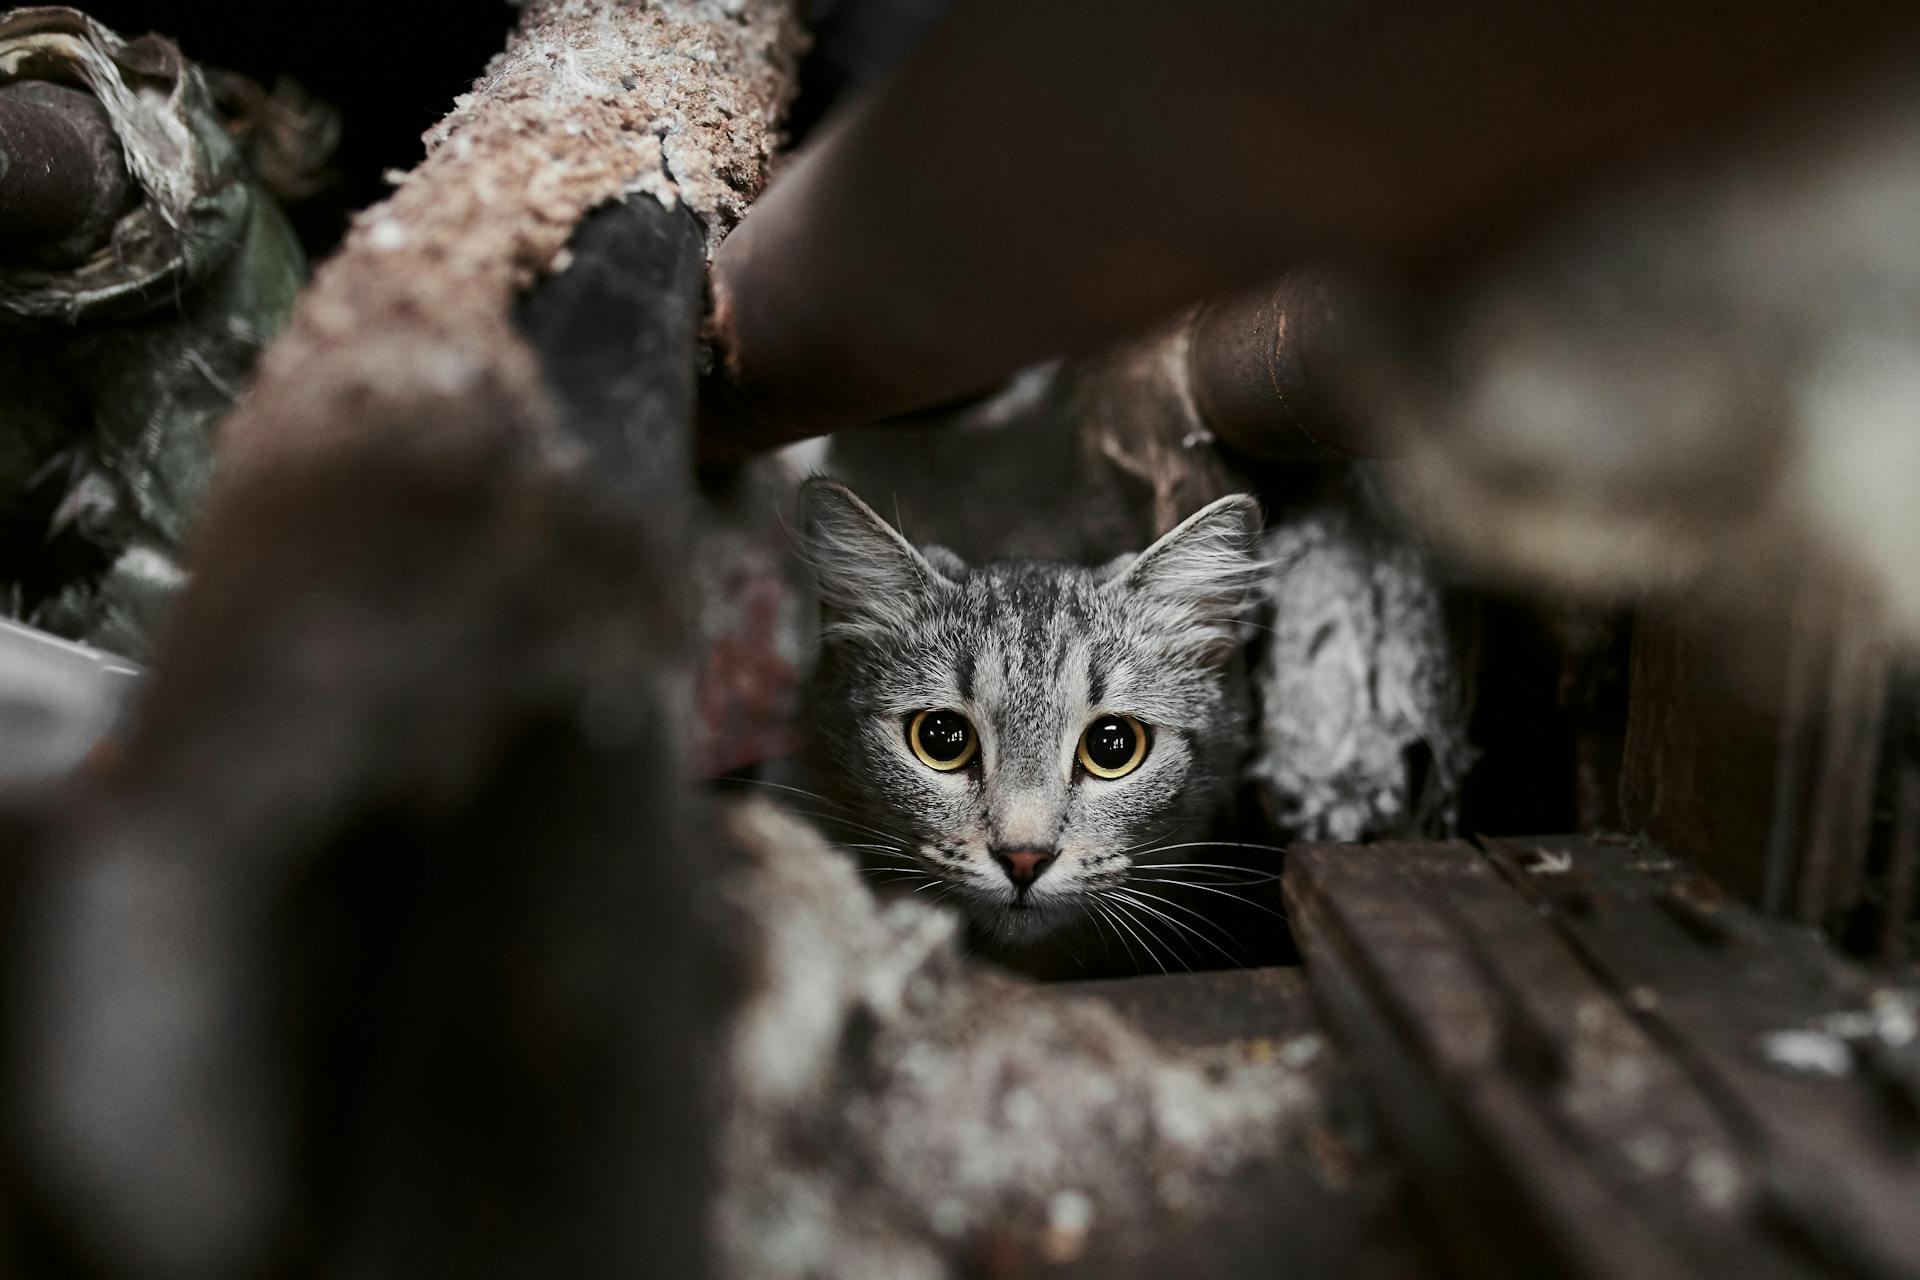 A cat hiding in a crawlspace